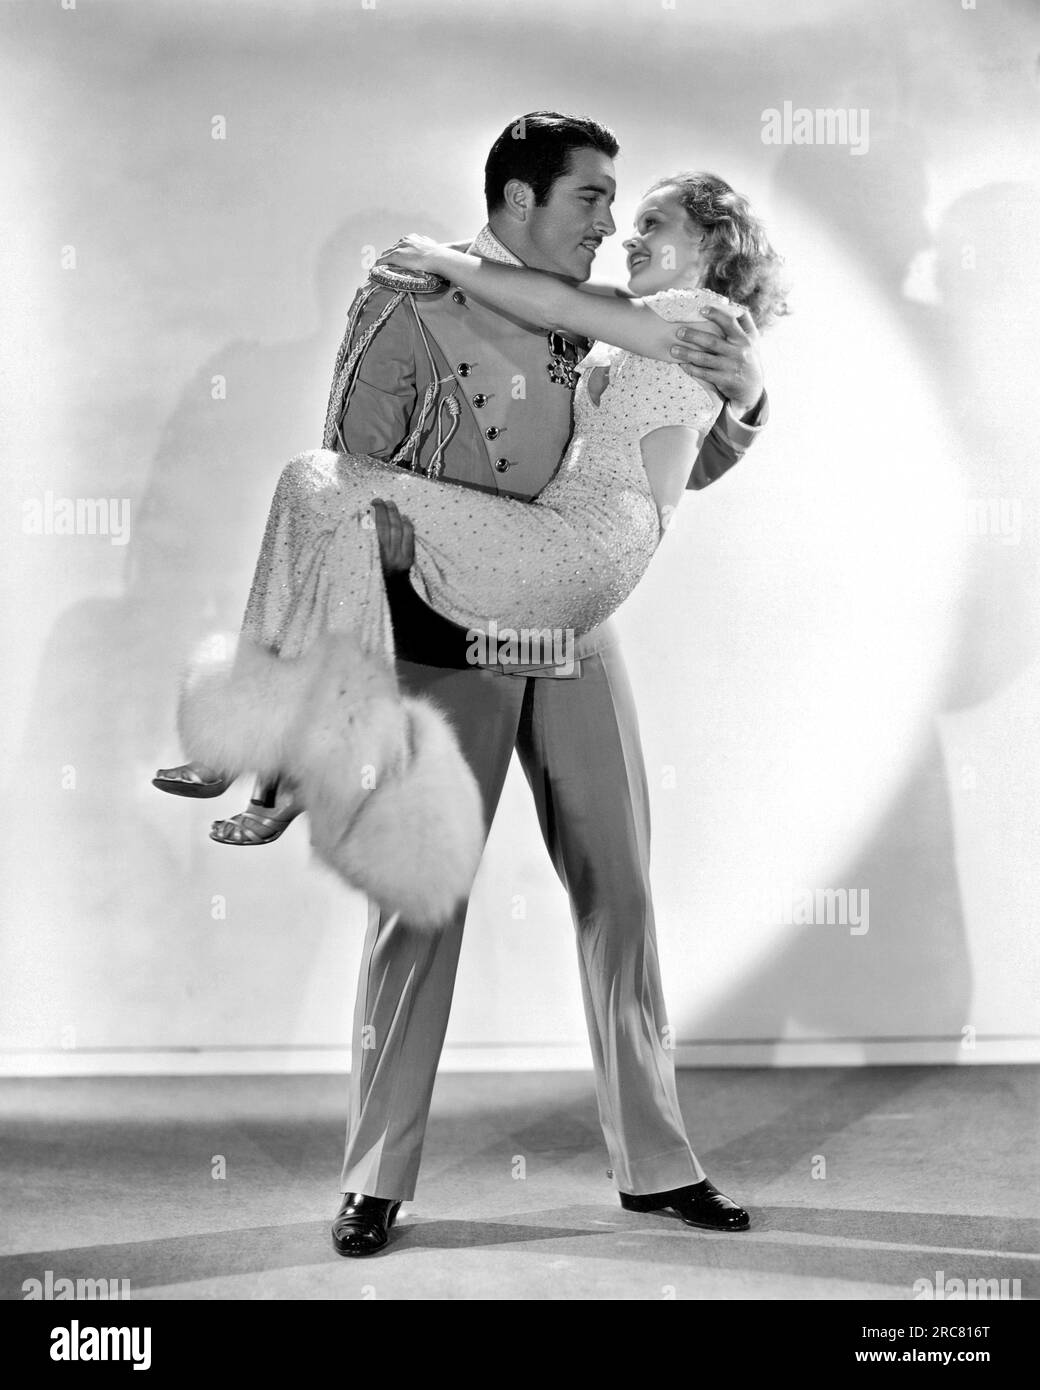 Hollywood, Kalifornien: 1933. John Boles hebt die reizende Lilian Harvey in dem Film "Meine Lippen verraten" auf. Stockfoto